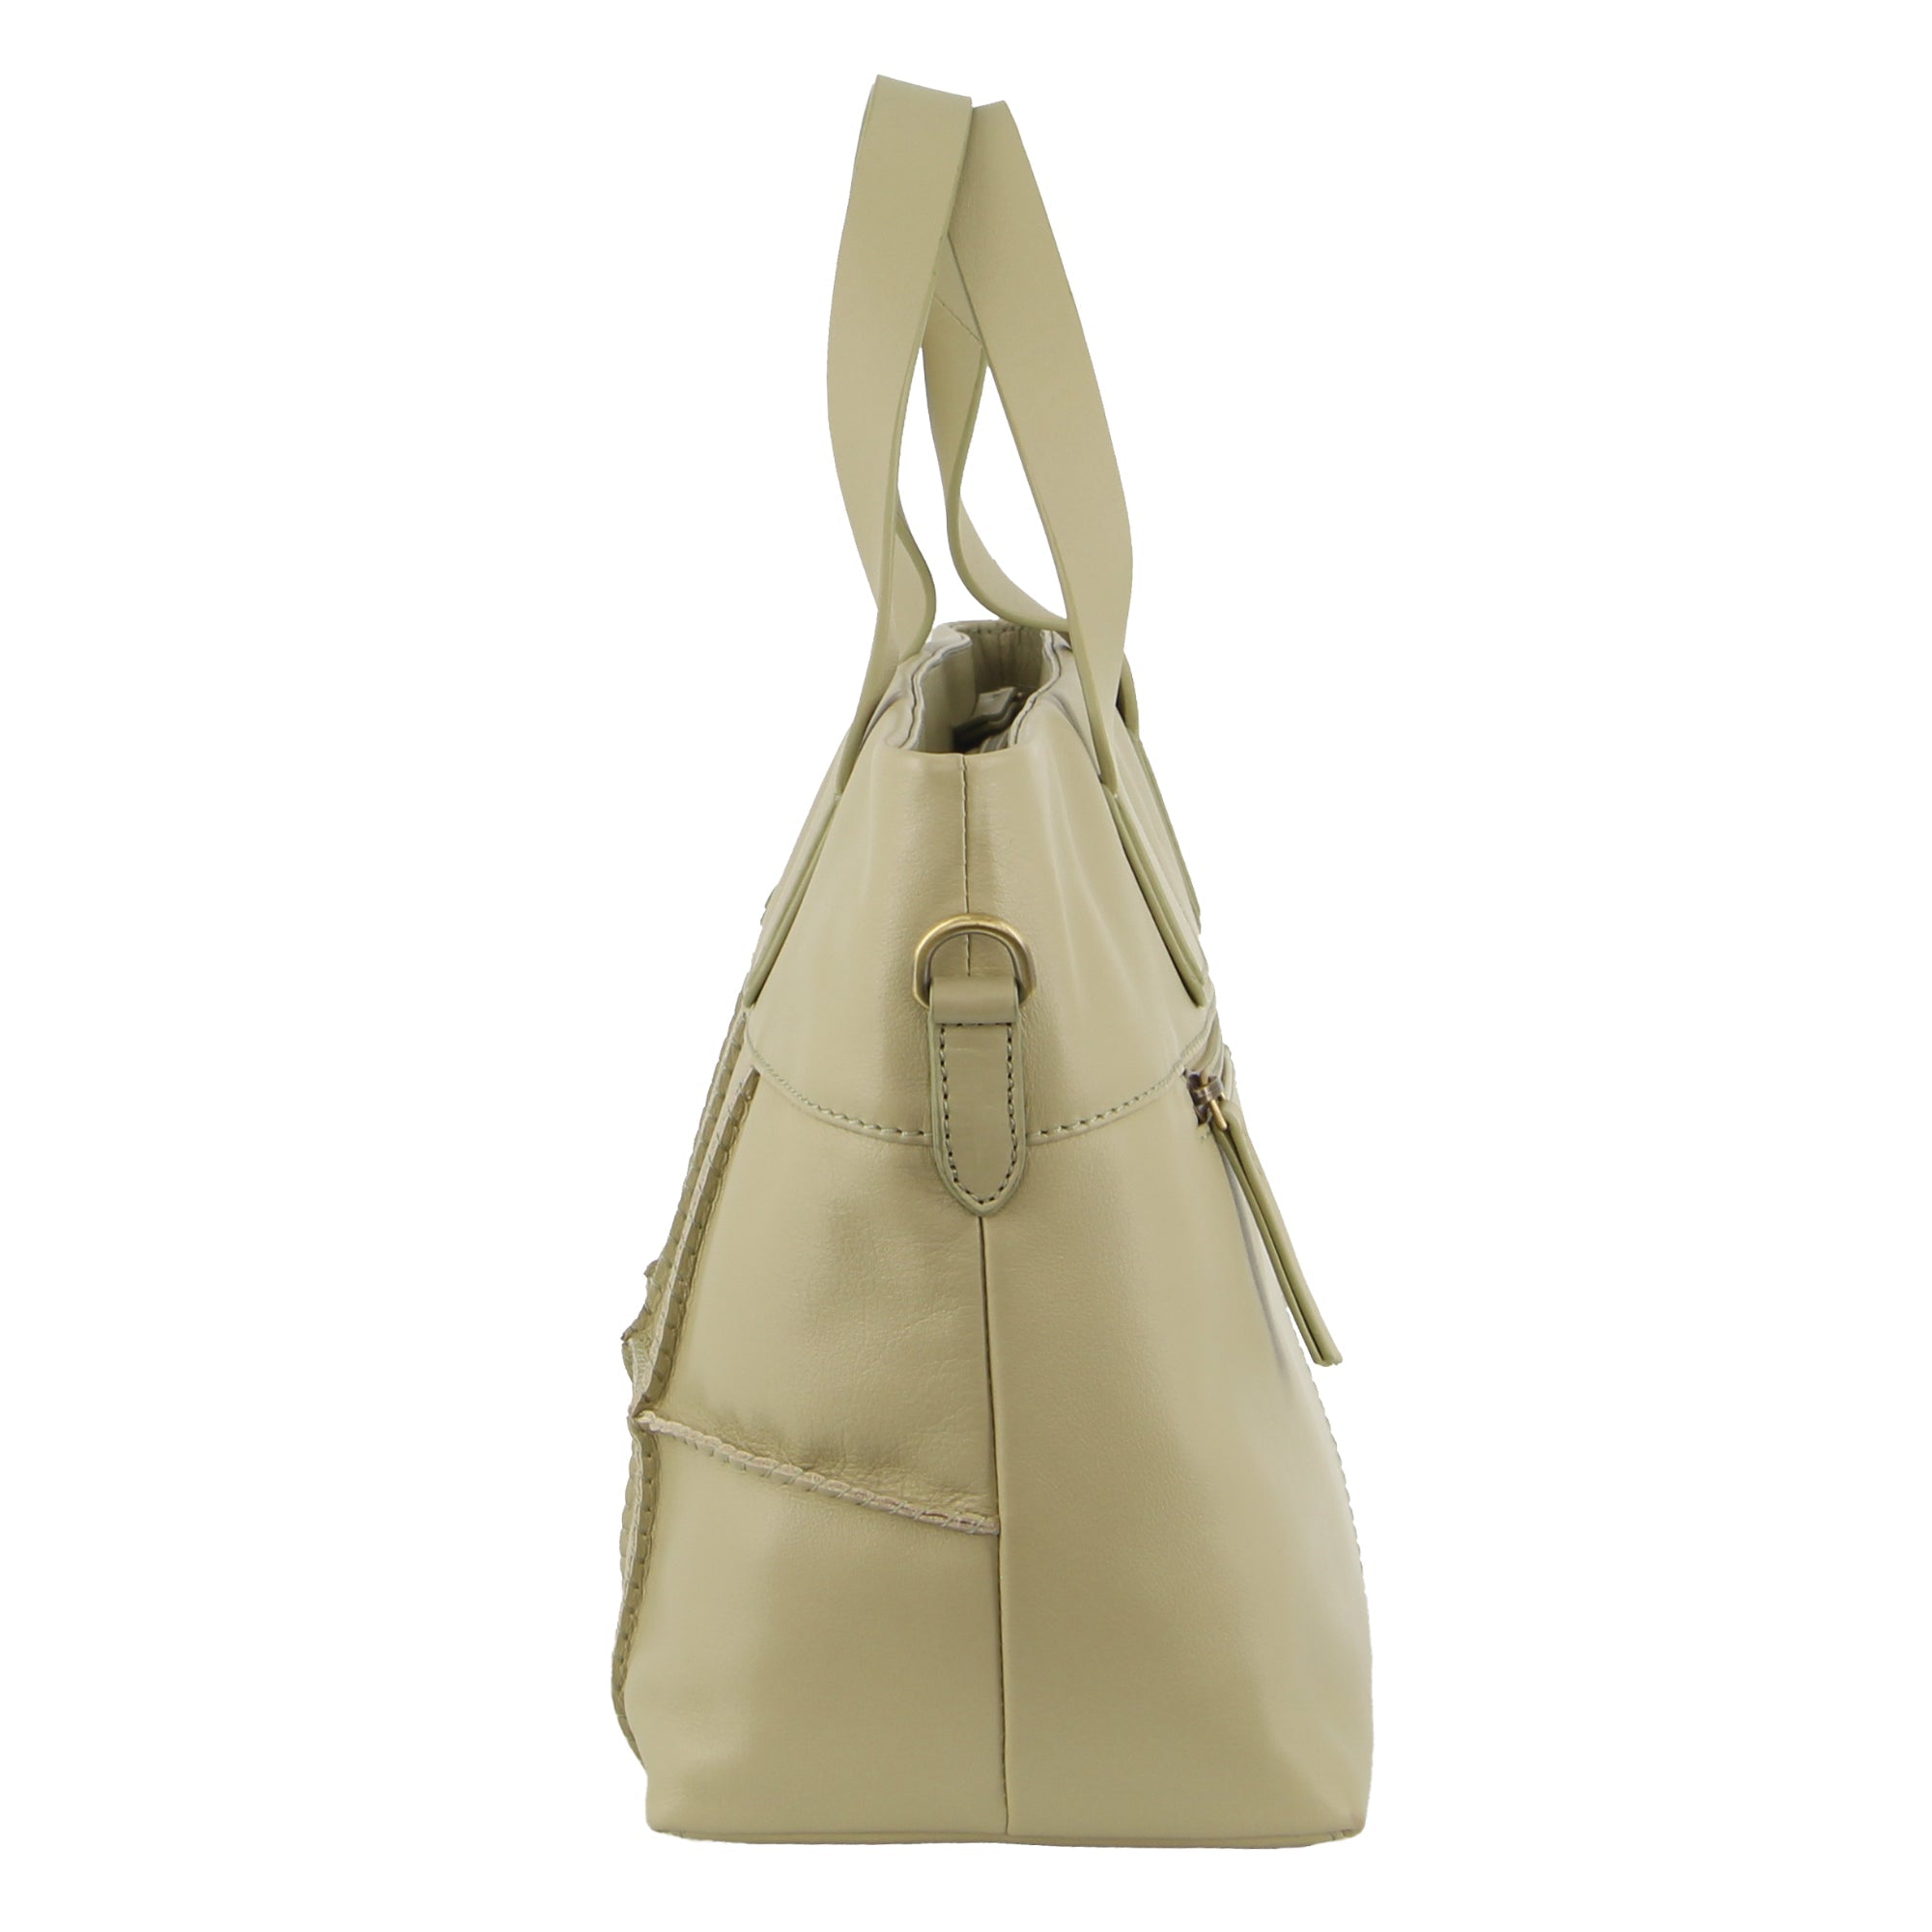 Pierre Cardin Ladies Leather Stitch-design Handbag in Sand